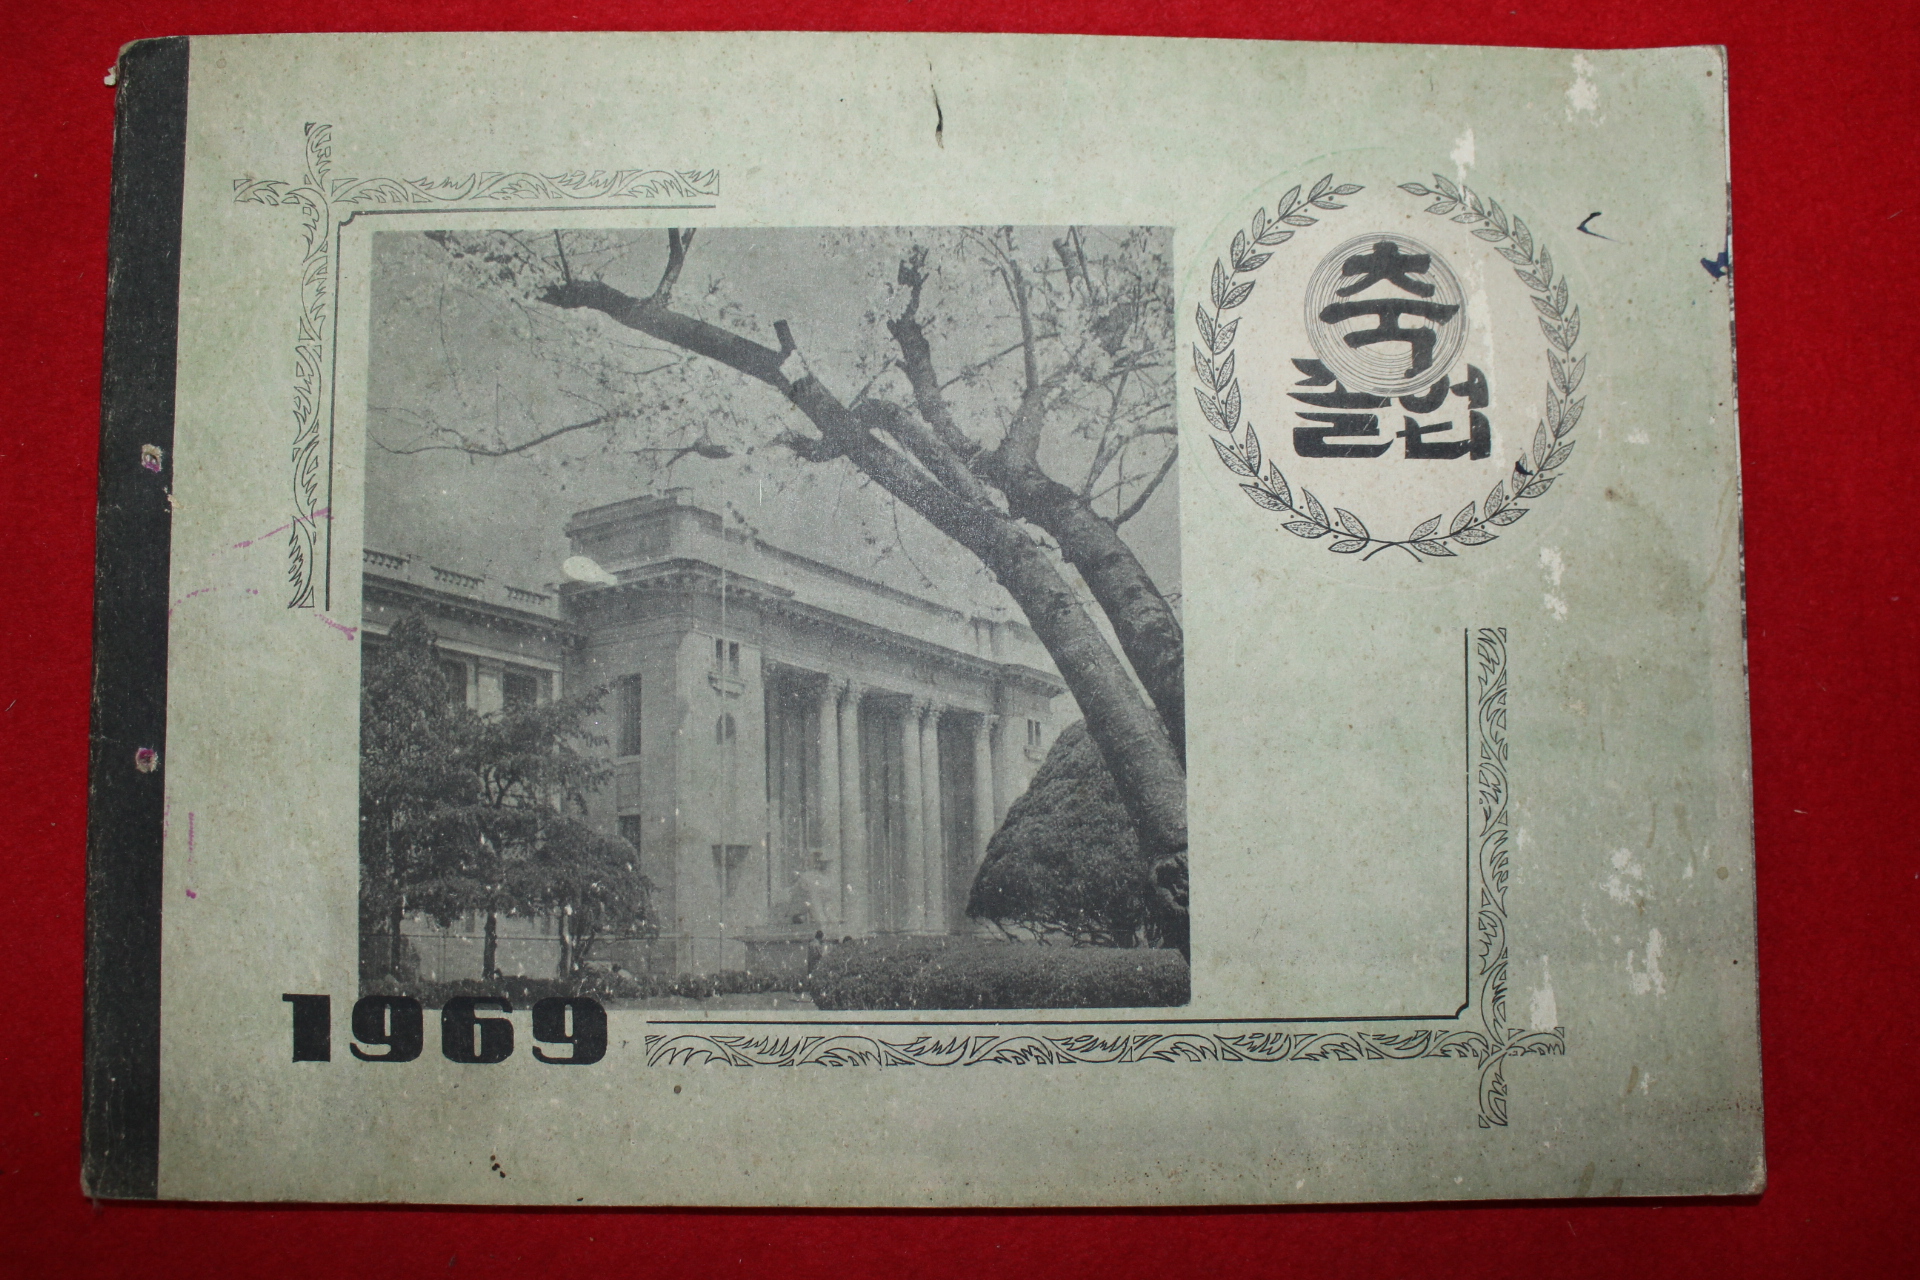 1969년 진양군 대곡국민학교 제39회 졸업기념앨범